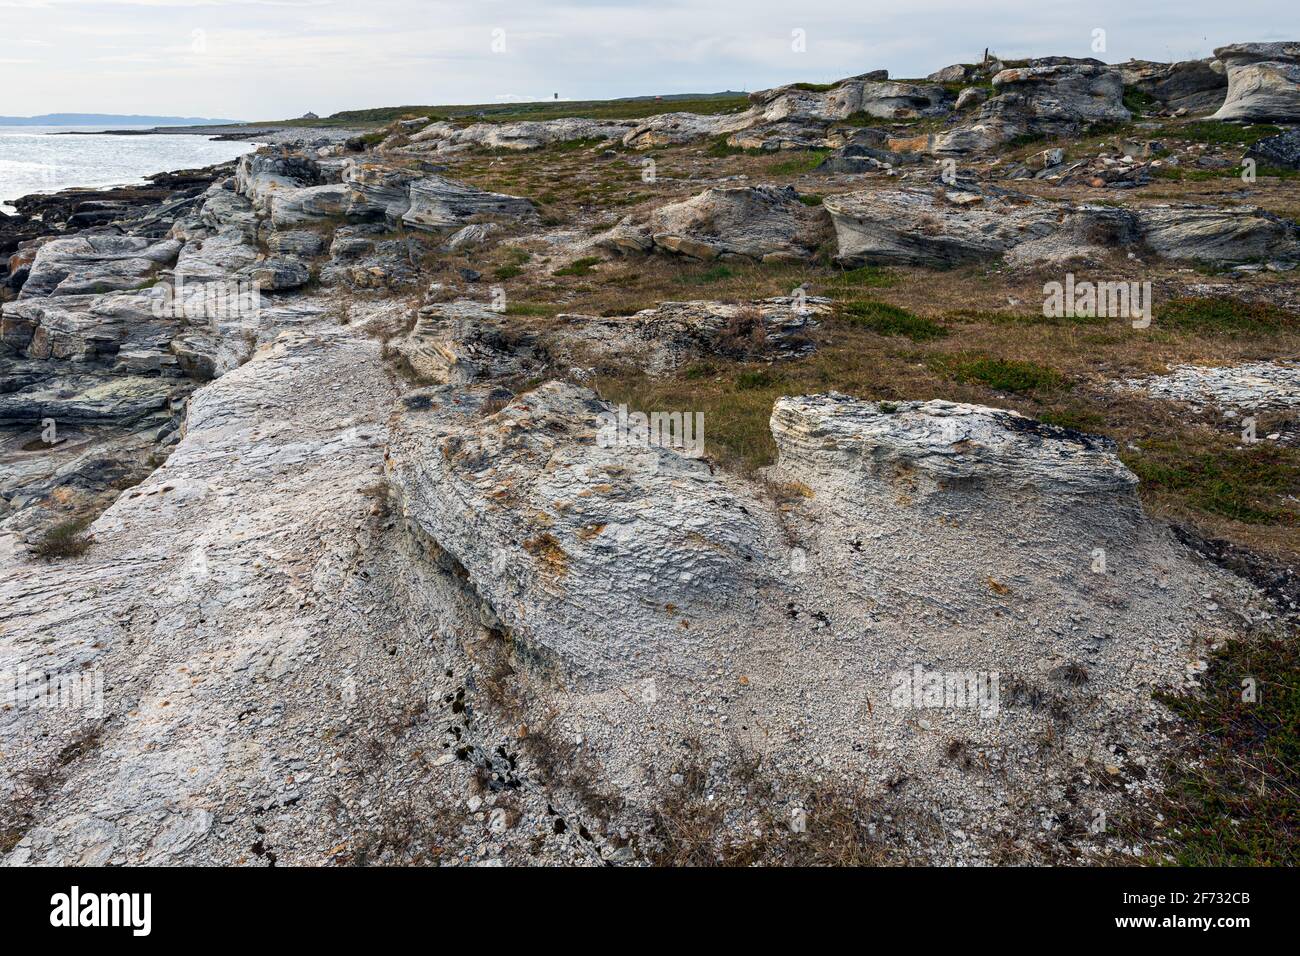 Piedras de mar naturales y roca de pizarra, costa del Océano Ártico en la península de Varanger, Finnmark, Noruega Foto de stock